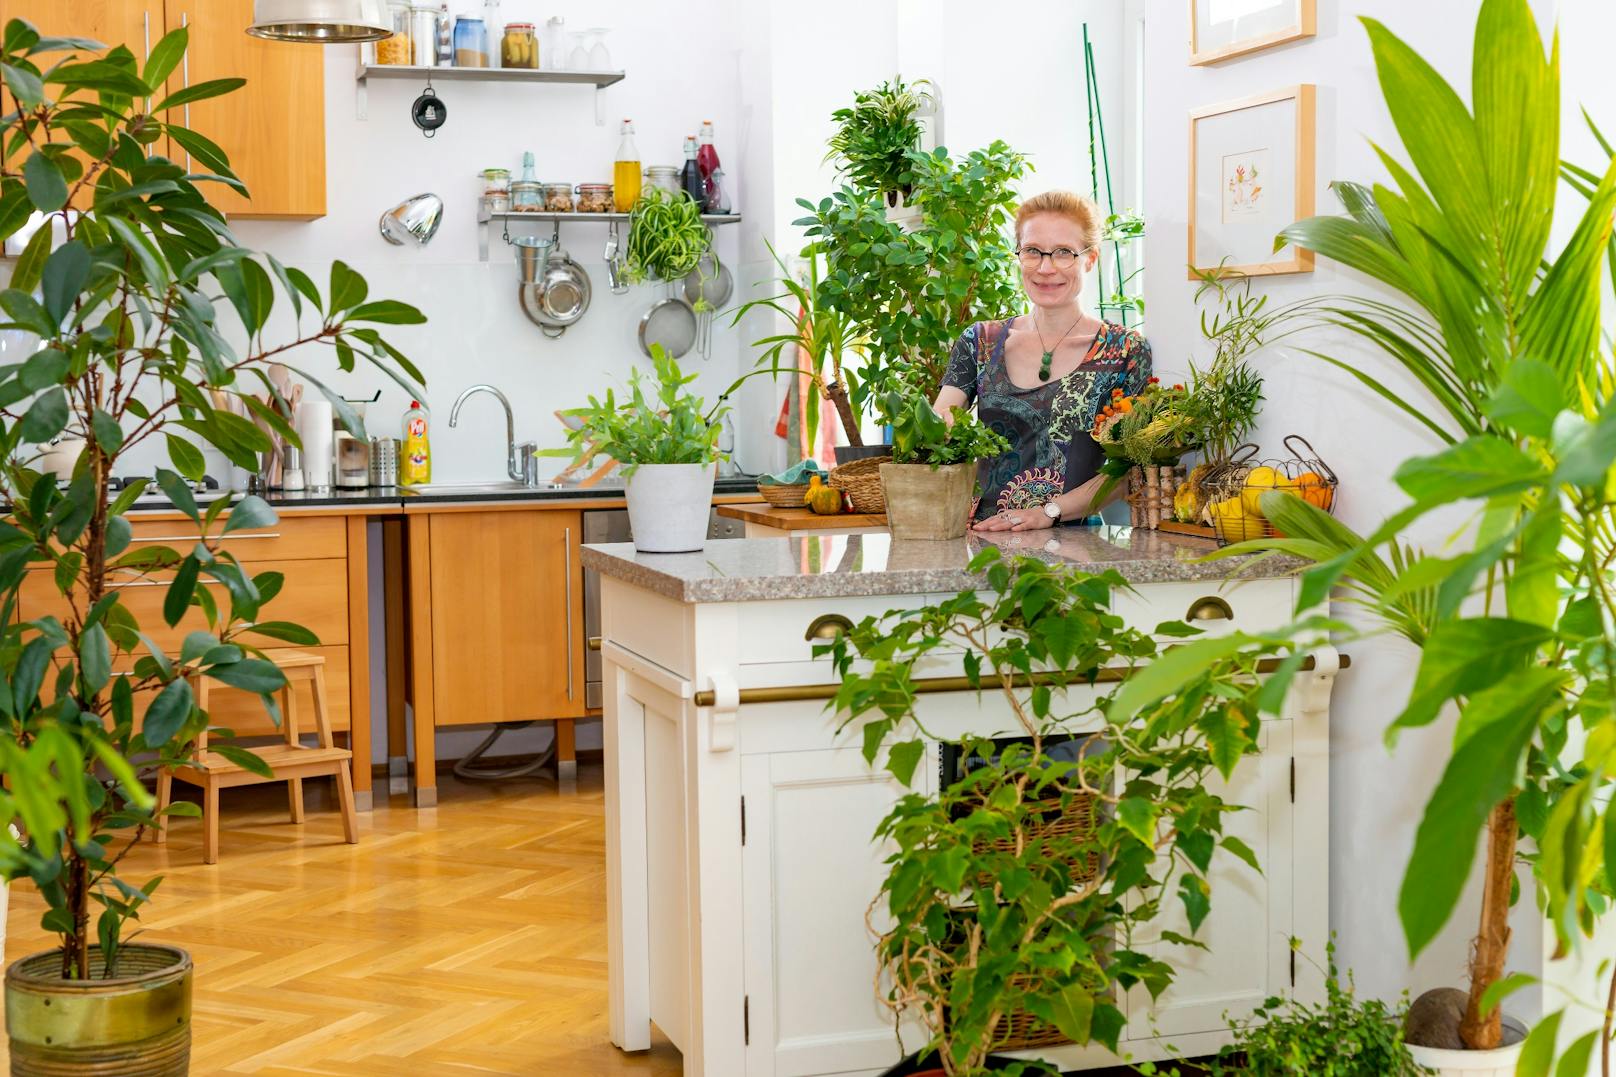 Beim Fotowettbewerb "Blühendes Zuhause" der Stadt Wien bekam&nbsp;Katy Schmidt die blumige Auszeichnung in der neuen Kategorie "Indoor-Garten" für ihren Indoor-Dschungel in ihrer Wohnung in der Leopoldstadt.